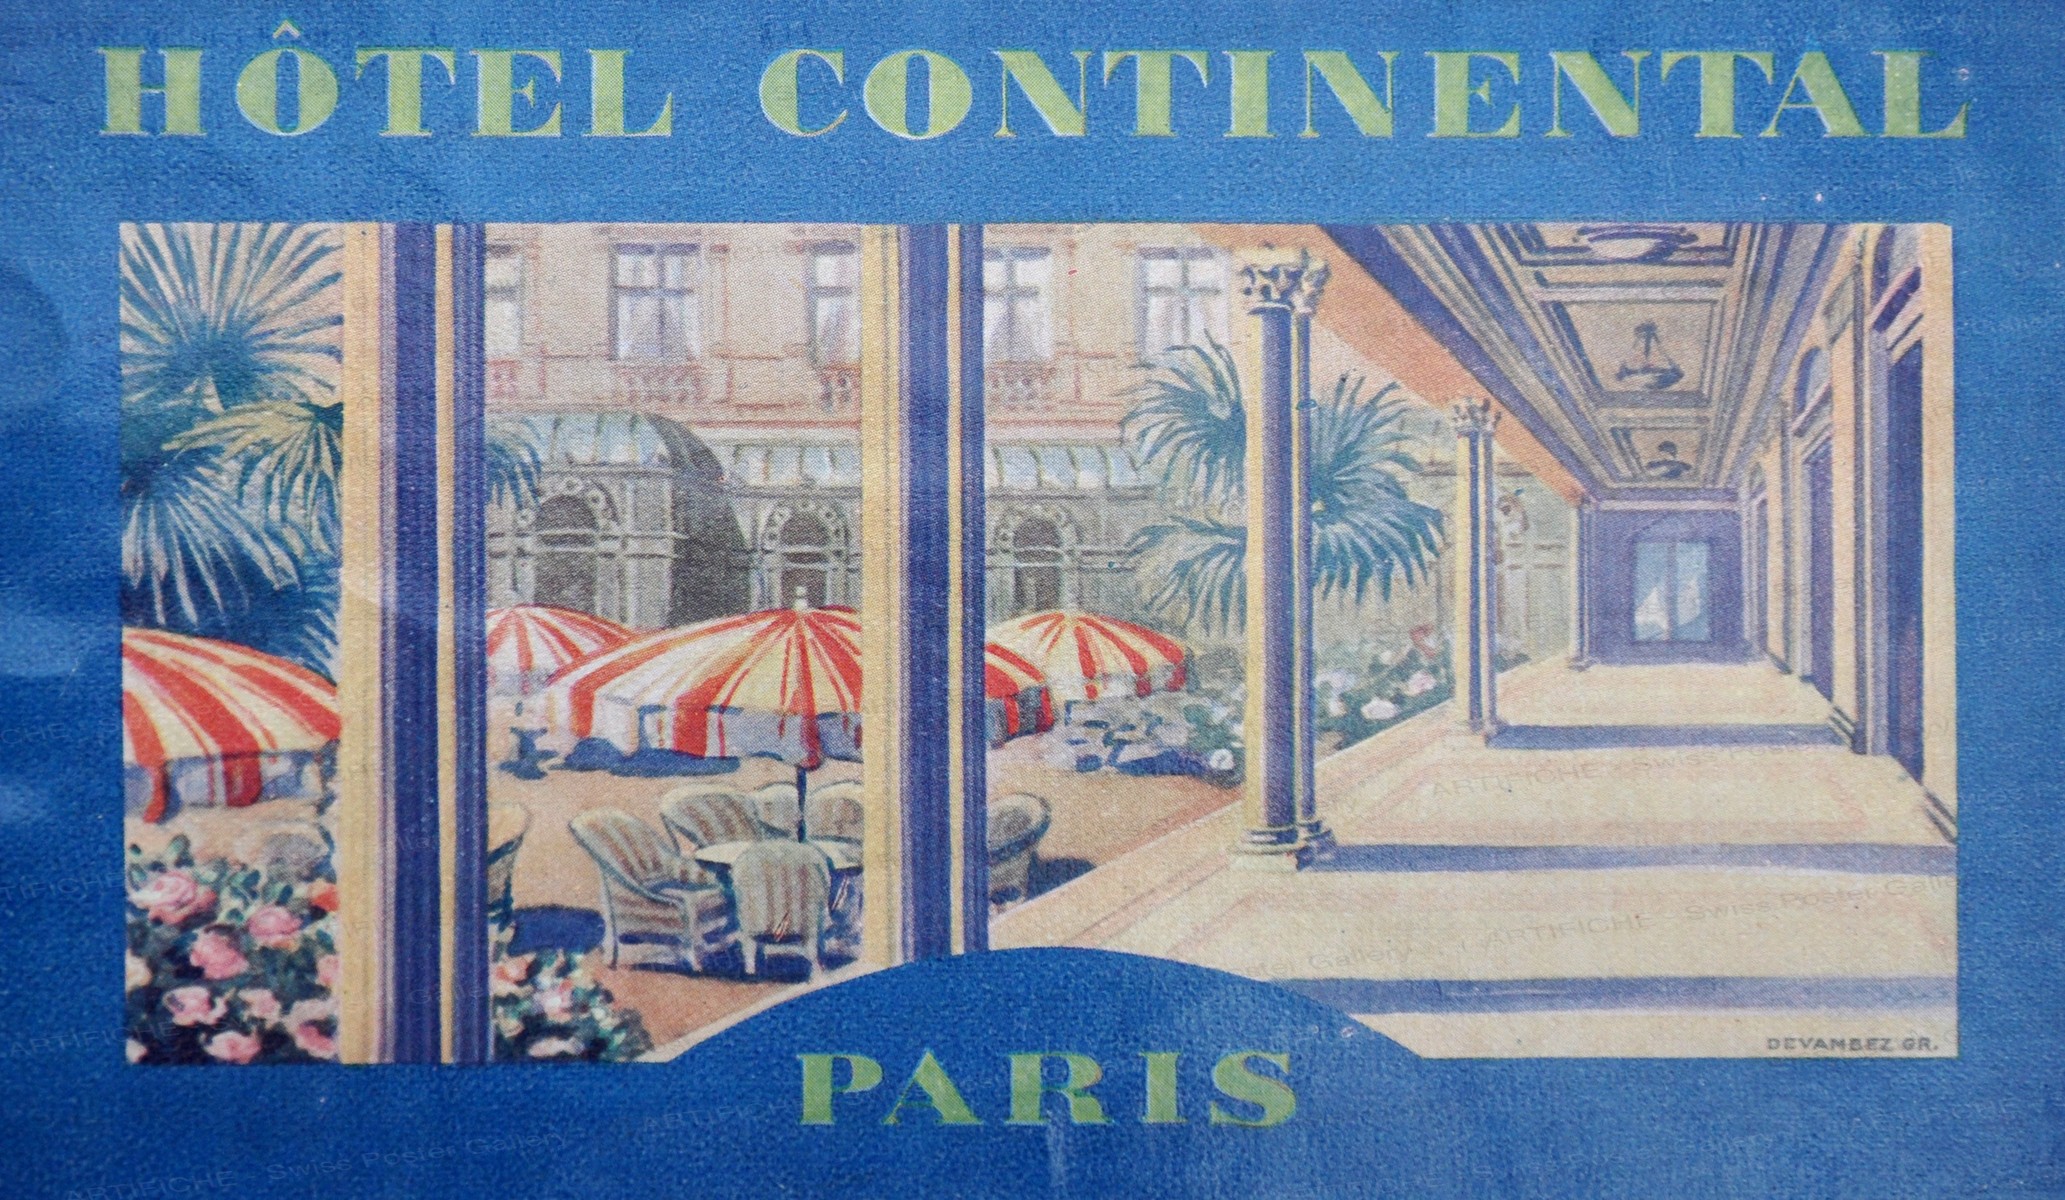 Hotel Continental Paris, Artist unknown